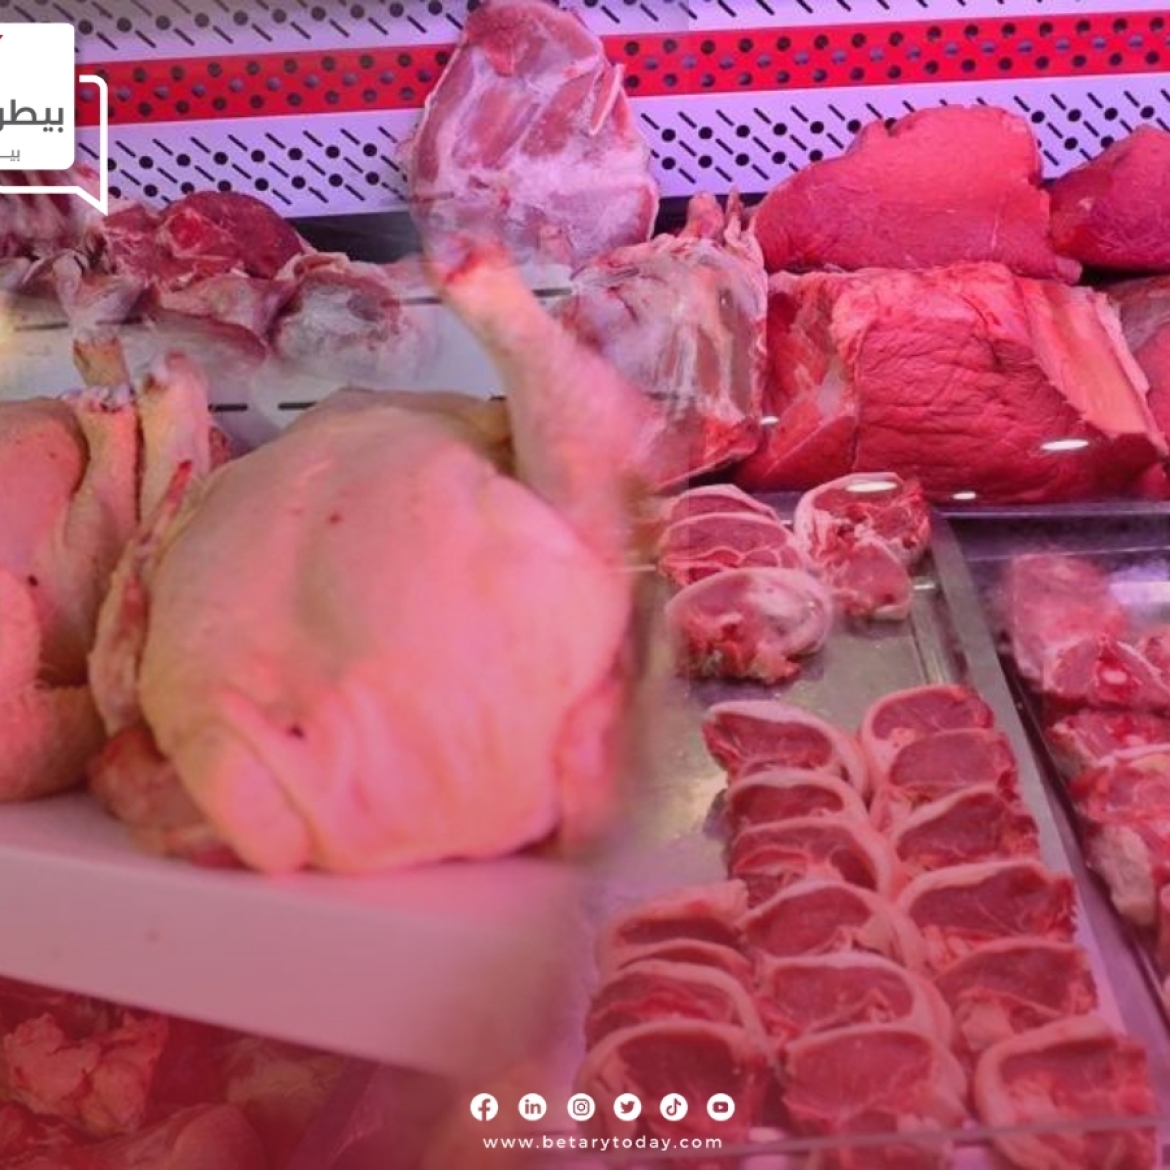 أزمة اللحوم تعصف بالبلاد الليبية خلال شهر رمضان المبارك